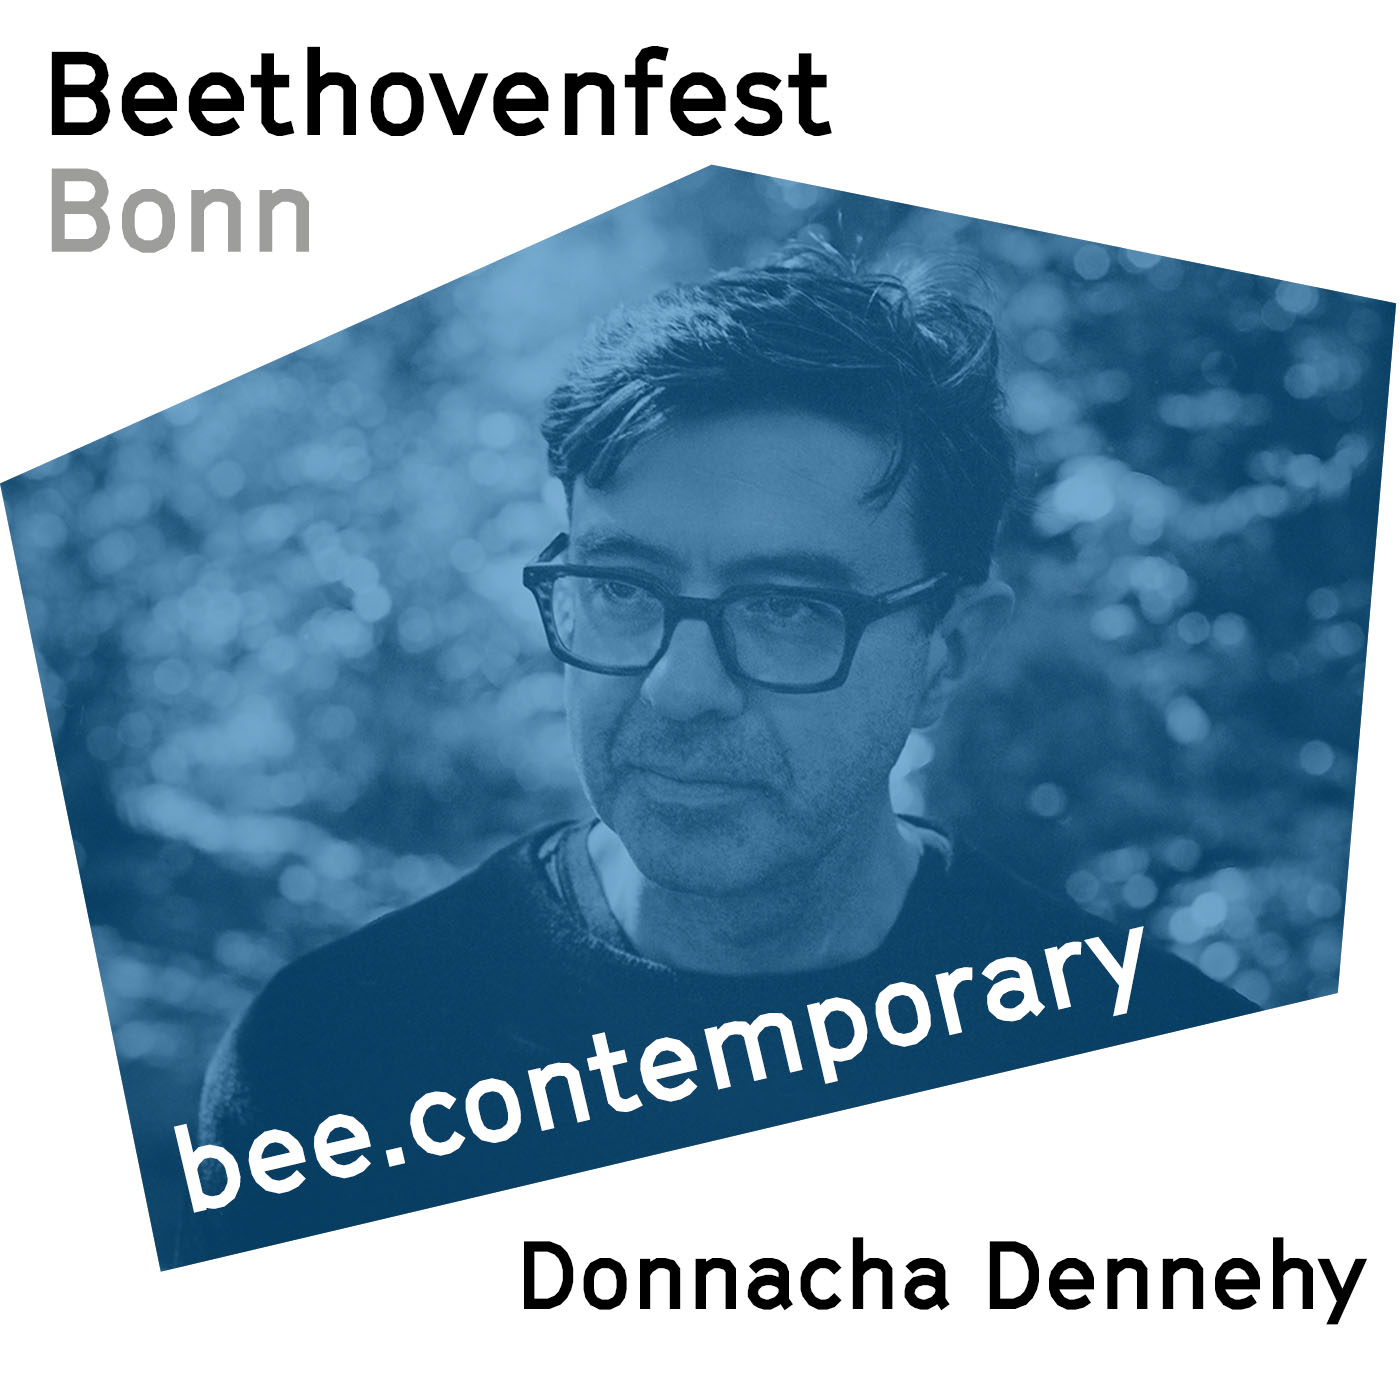 Donnacha Dennehy, what makes a good composer?